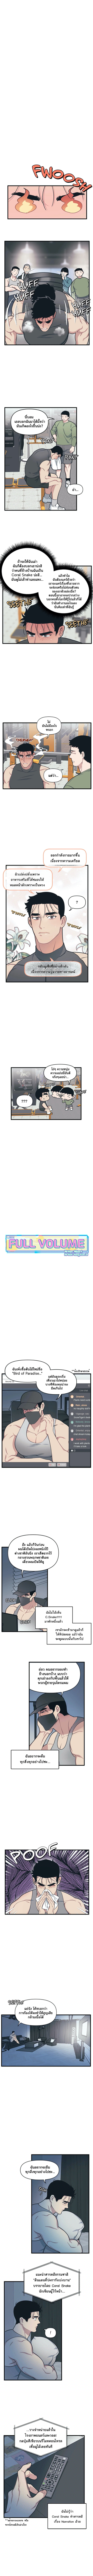 Full Volume 9 2